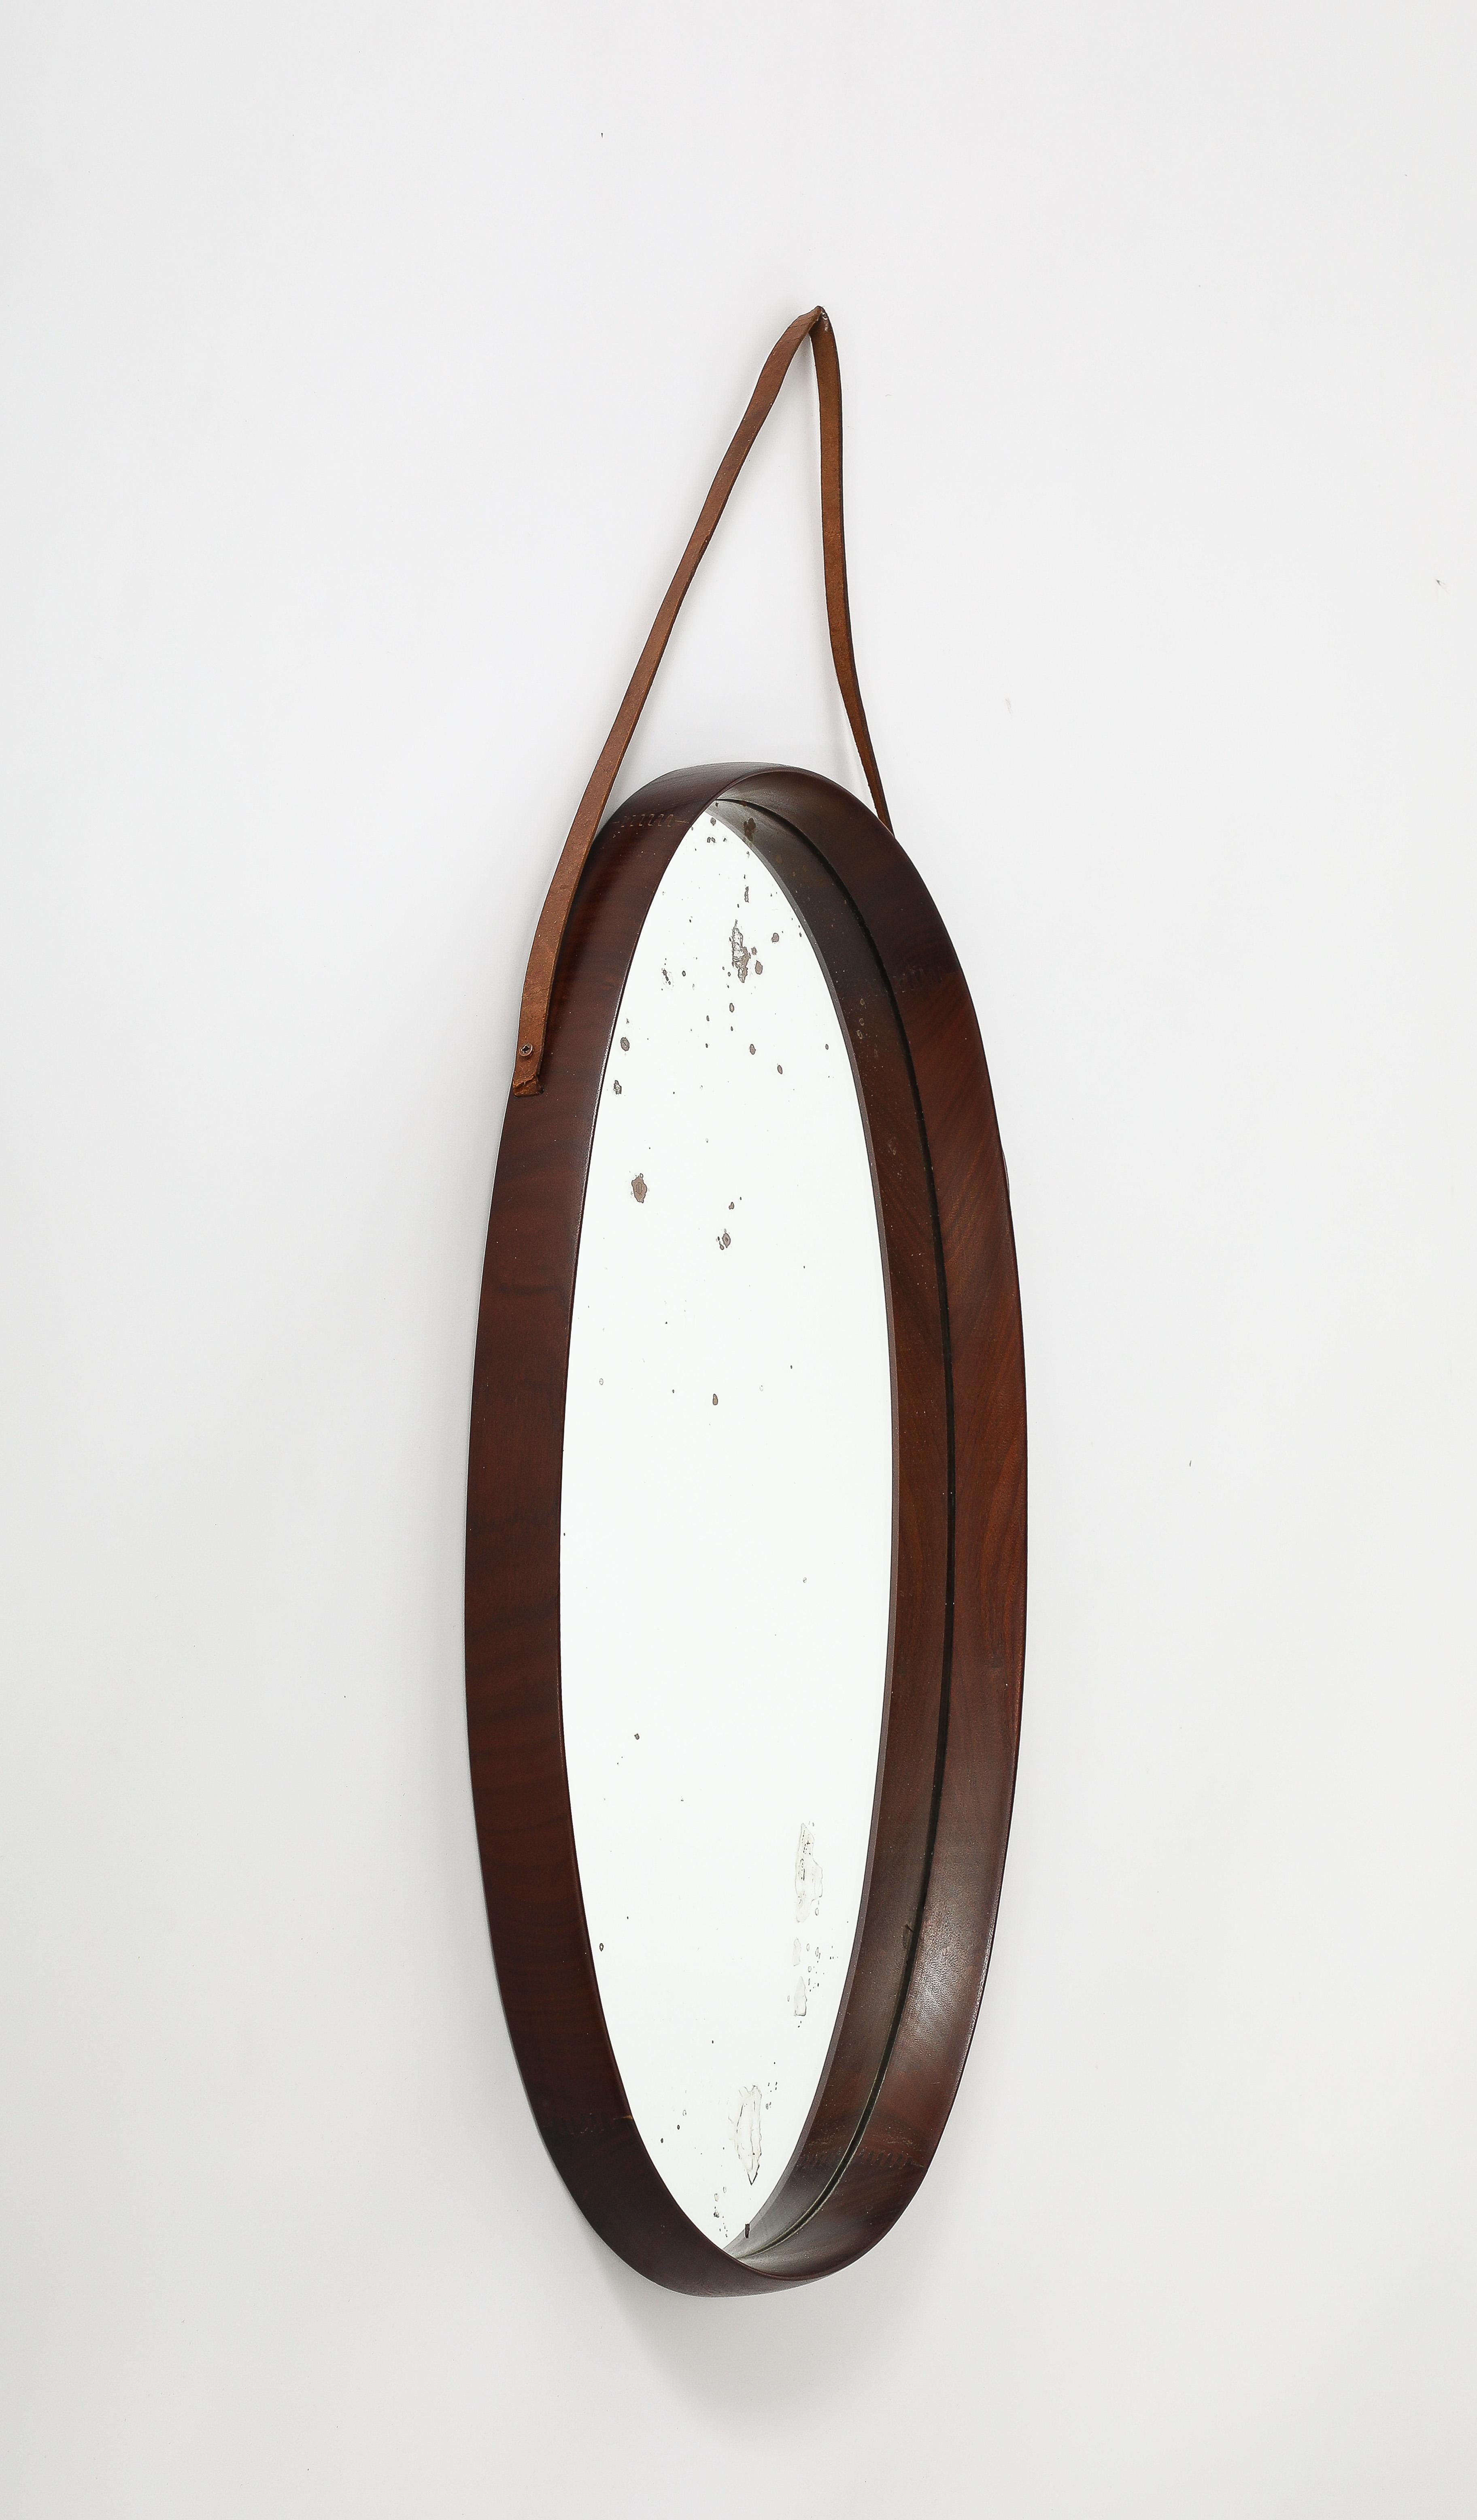 Miroir mural italien ovale en teck avec sangle en cuir.  Un design du milieu du siècle très simple et organique.
Italie, vers 1950 
Taille : cadre de 27 1/2